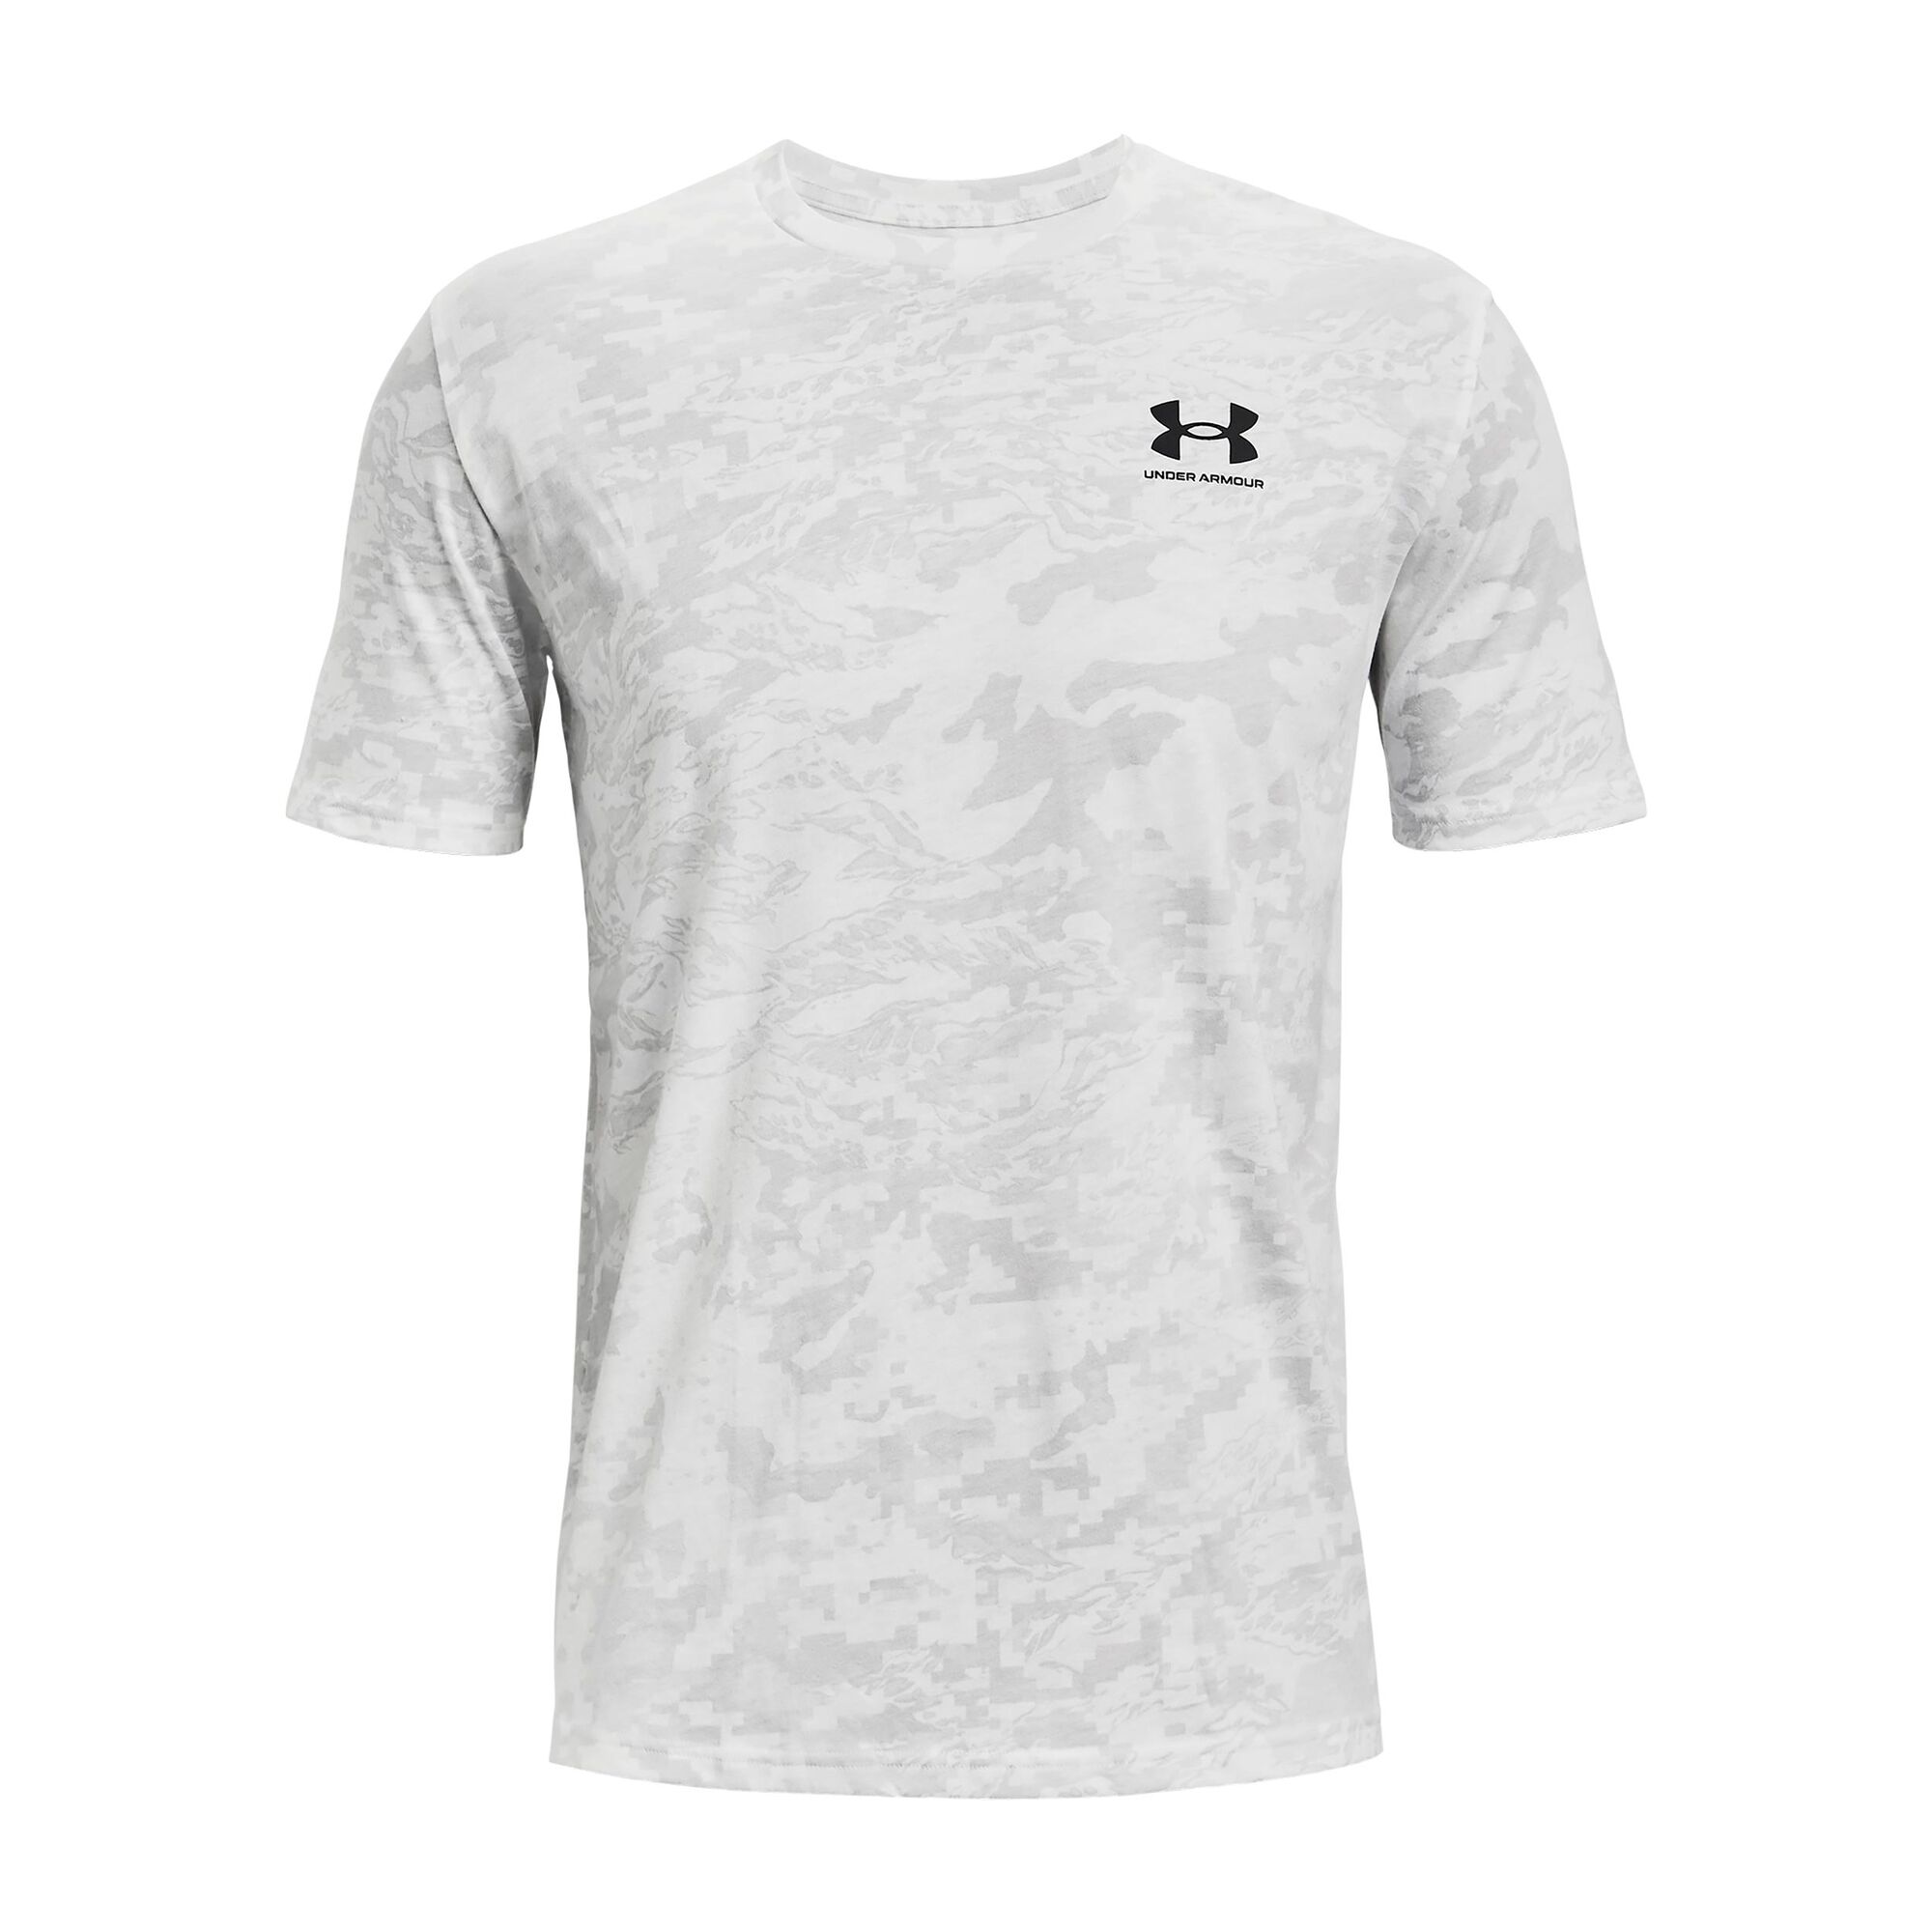 Buy Under Armour ABC Camo T-Shirt Men White online | Tennis Point COM